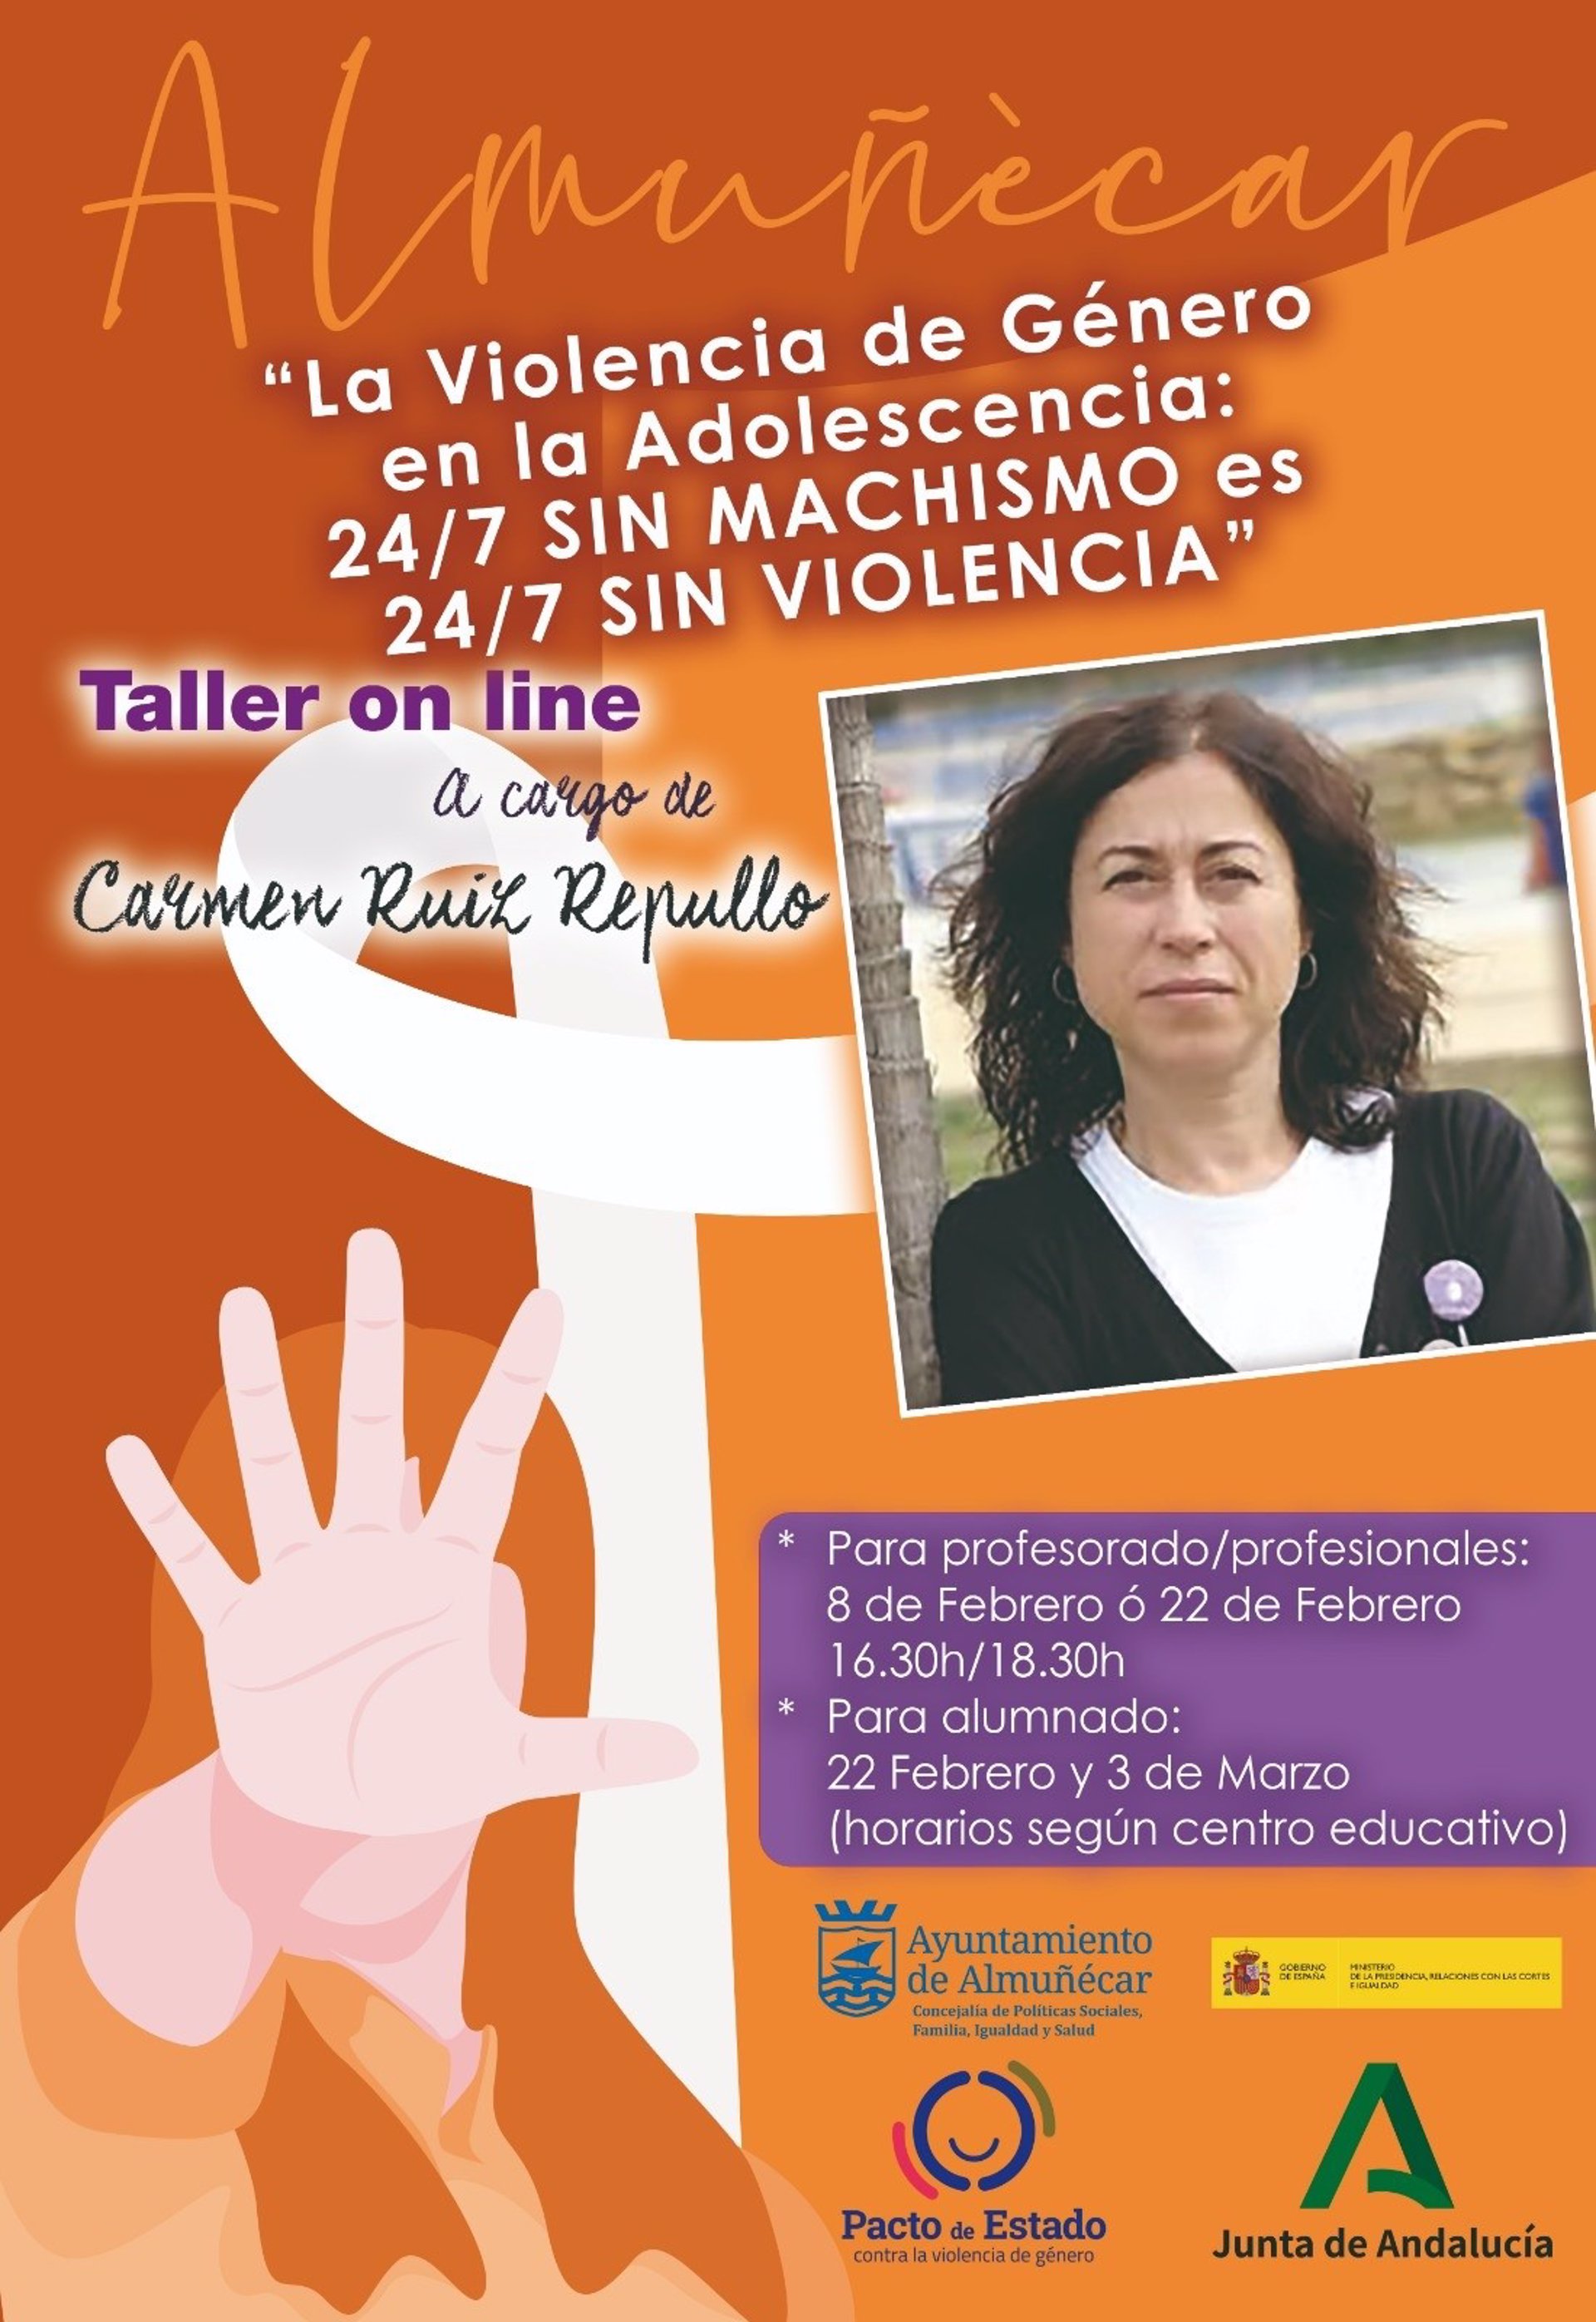 Almuñécar inicia un programa de talleres de prevención de violencia de género en la adolescencia